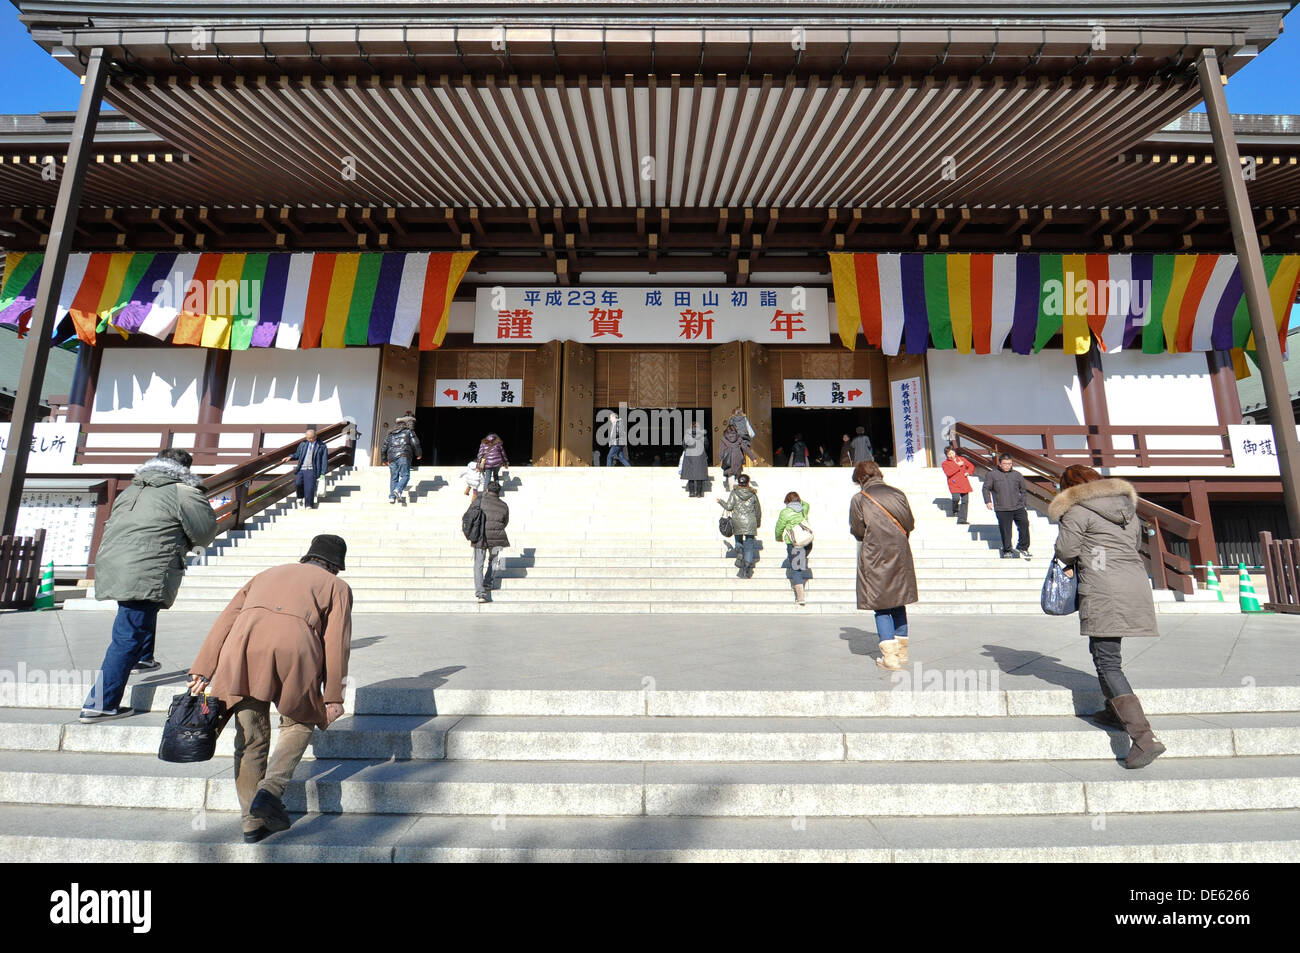 The entrance to the main hall of Naritasan (Naritasan Shinshoji Temple) in Narita City, Japan. Stock Photo